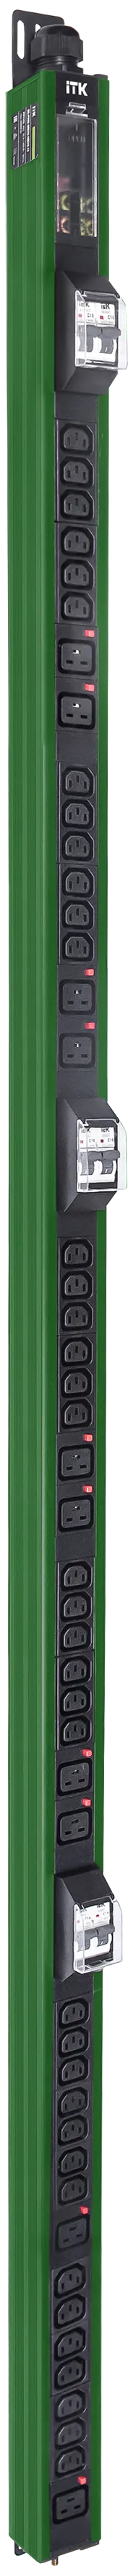 ITK BASE PDU вертикальный PV1113 45U 3 фазы 32А 38 розеток C13 + 10 розеток C19 с клеммной колодкой и кабелем 6м вилка IEC60309 (промышленная) зелёный